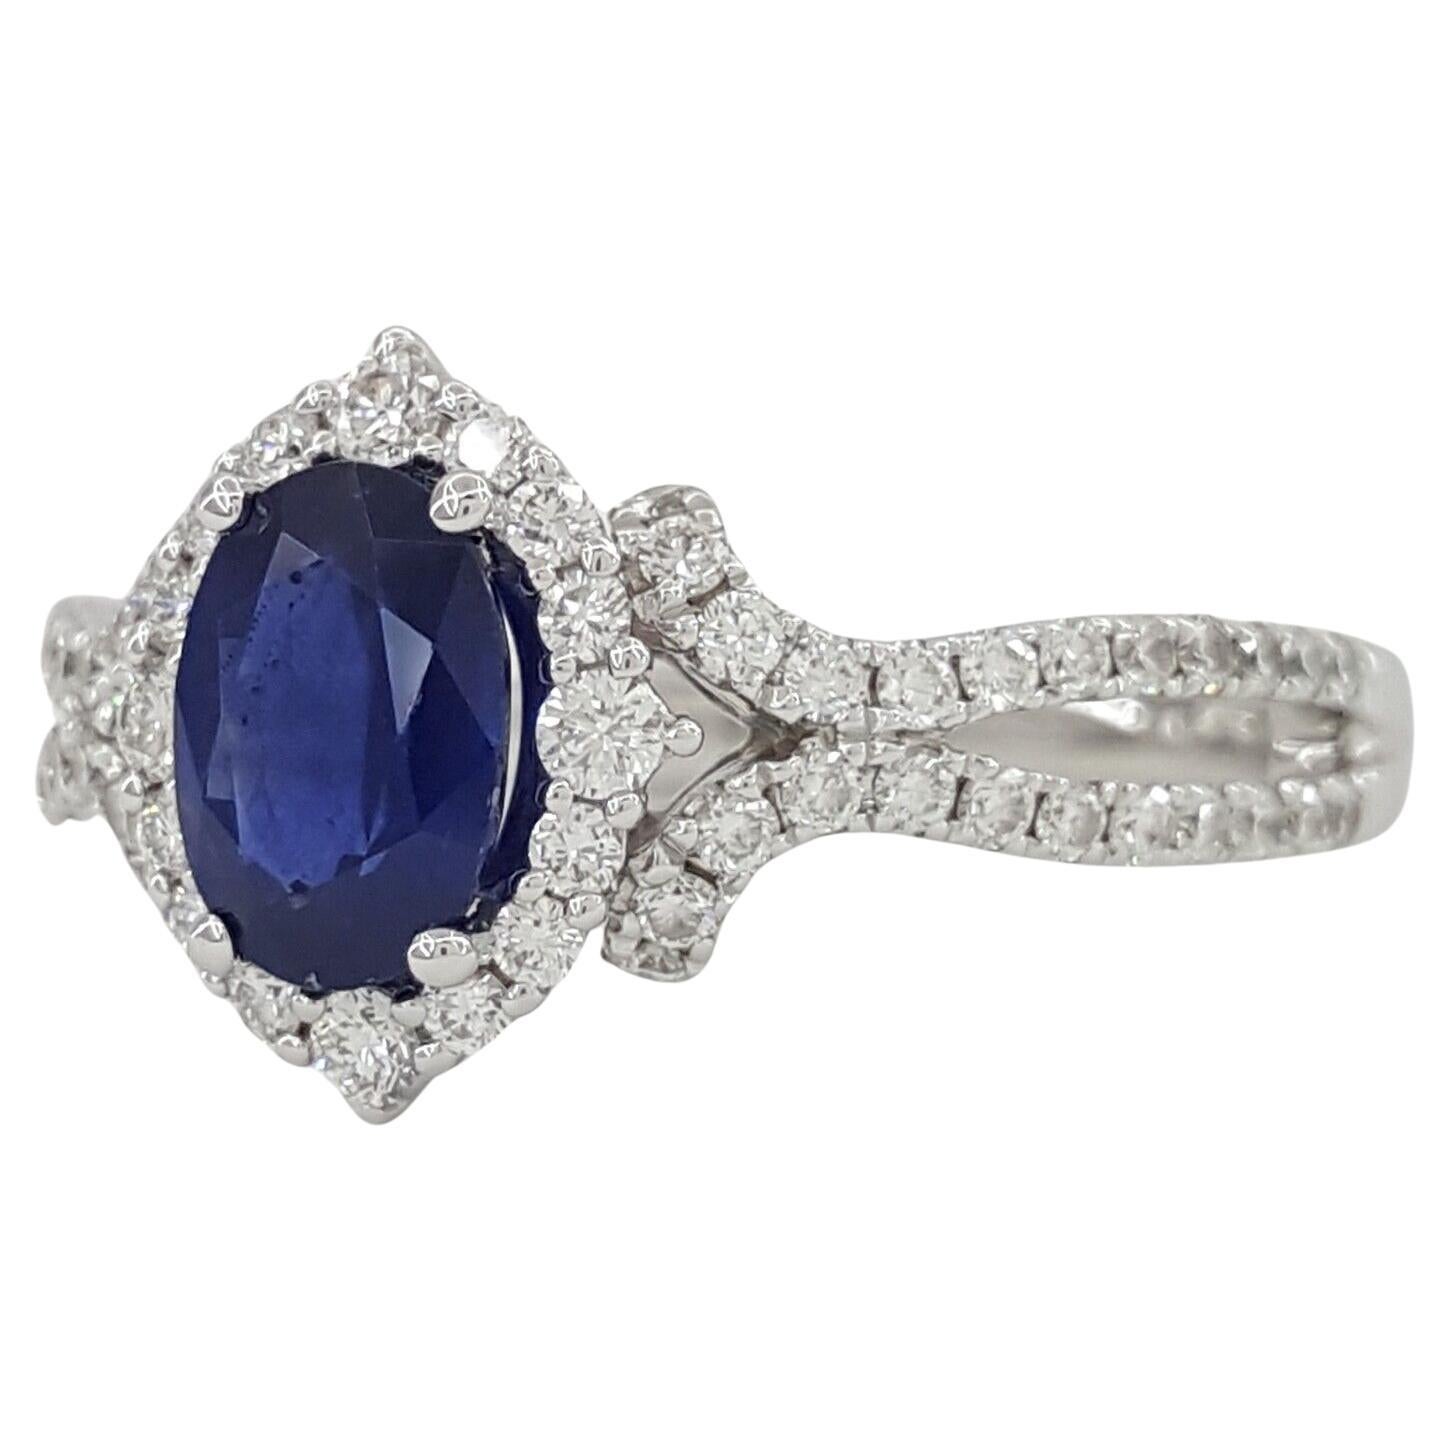 Ovaler blauer Saphir & runder Diamant im Brillantschliff Halo 14k Weißgold Verlobungsring.

 

Der Ring ist Größe 6,5, wiegt 3,4 Gramm, der Mittelstein ist ein Gorgeous 7,2 x 5,2 mm Oval Shaped Blue Sapphire (der Saphir ist nicht für